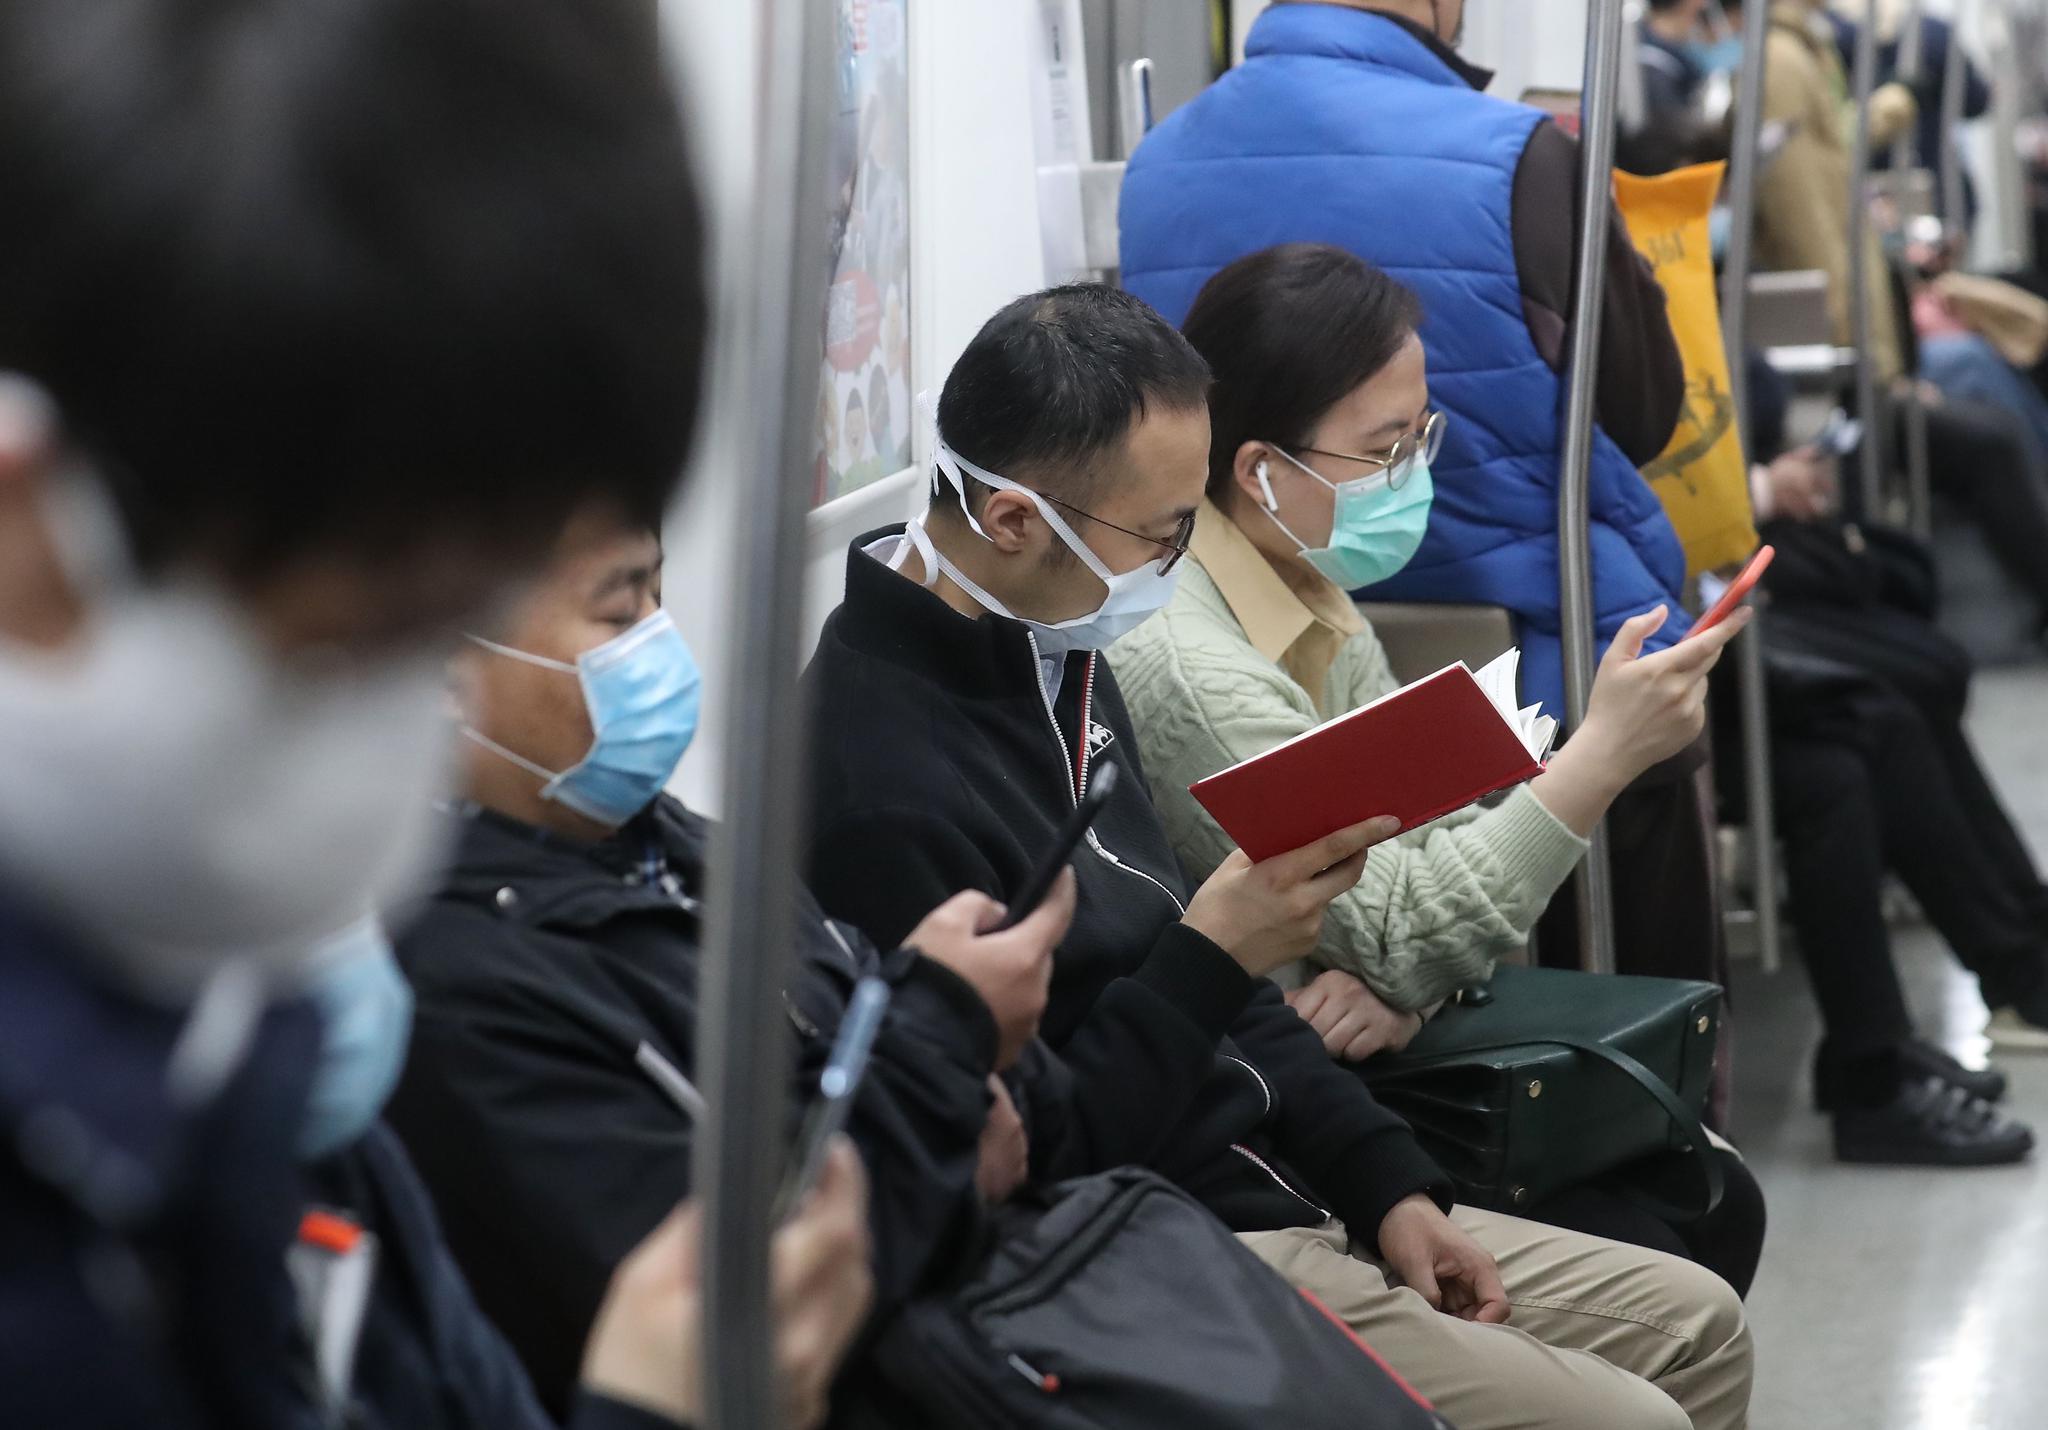  从今天（3月31日）起，北京地铁5号线、6号线、15号线和13号线将采取“超常超强列车运行图”，其中5号线、6号线、13号线的最小运行间隔将缩短至2分钟以内。新京报记者 王贵彬 摄